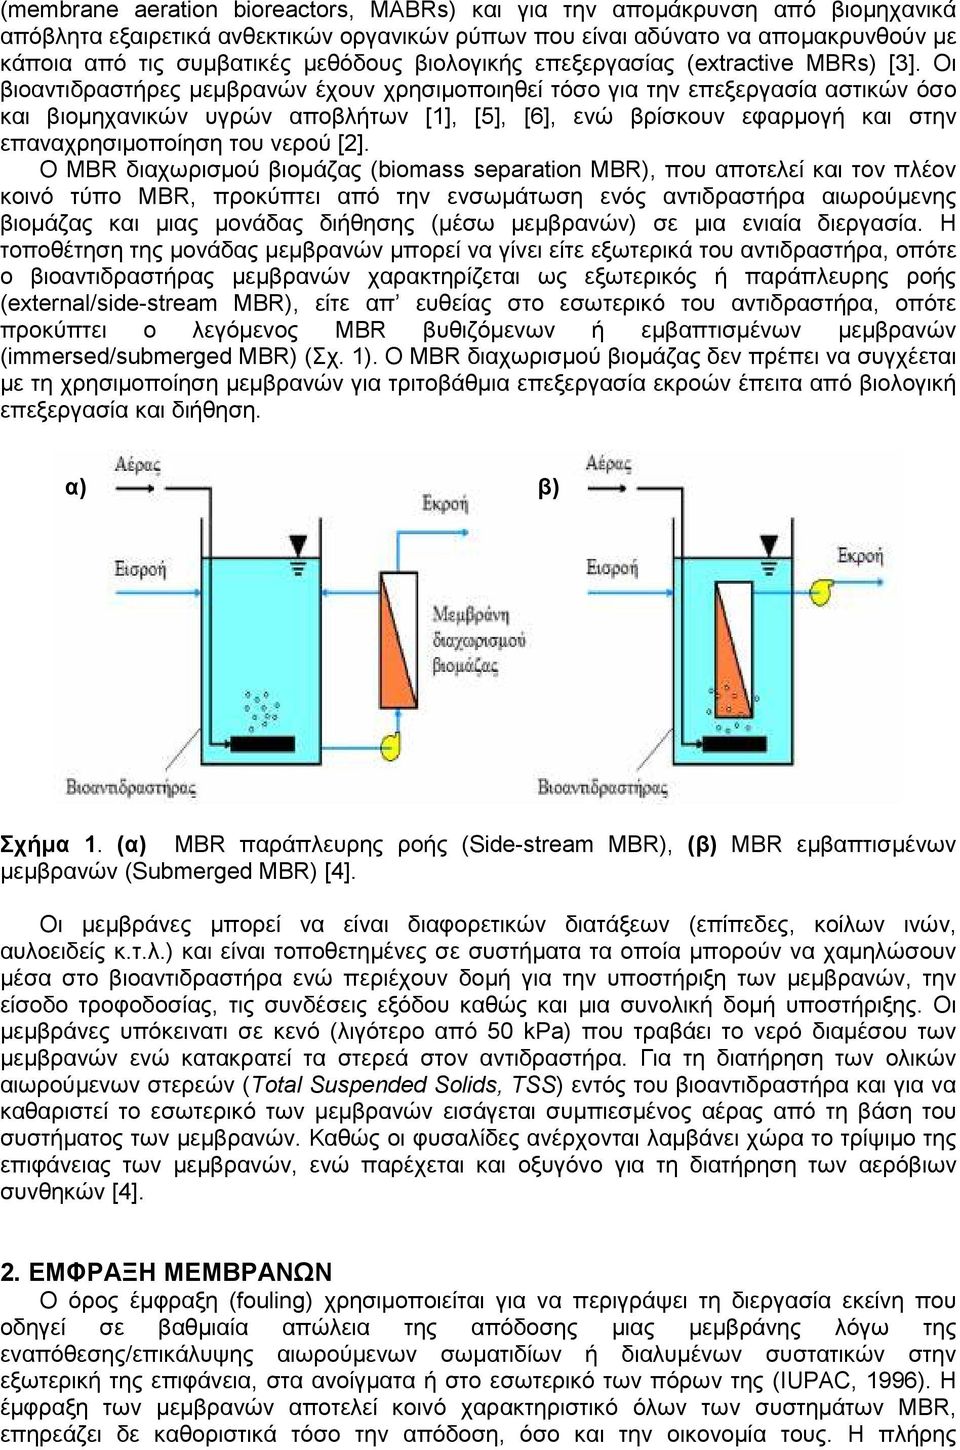 Οι βιοαντιδραστήρες µεµβρανών έχουν χρησιµοποιηθεί τόσο για την επεξεργασία αστικών όσο και βιοµηχανικών υγρών αποβλήτων [1], [5], [6], ενώ βρίσκουν εφαρµογή και στην επαναχρησιµοποίηση του νερού [2].